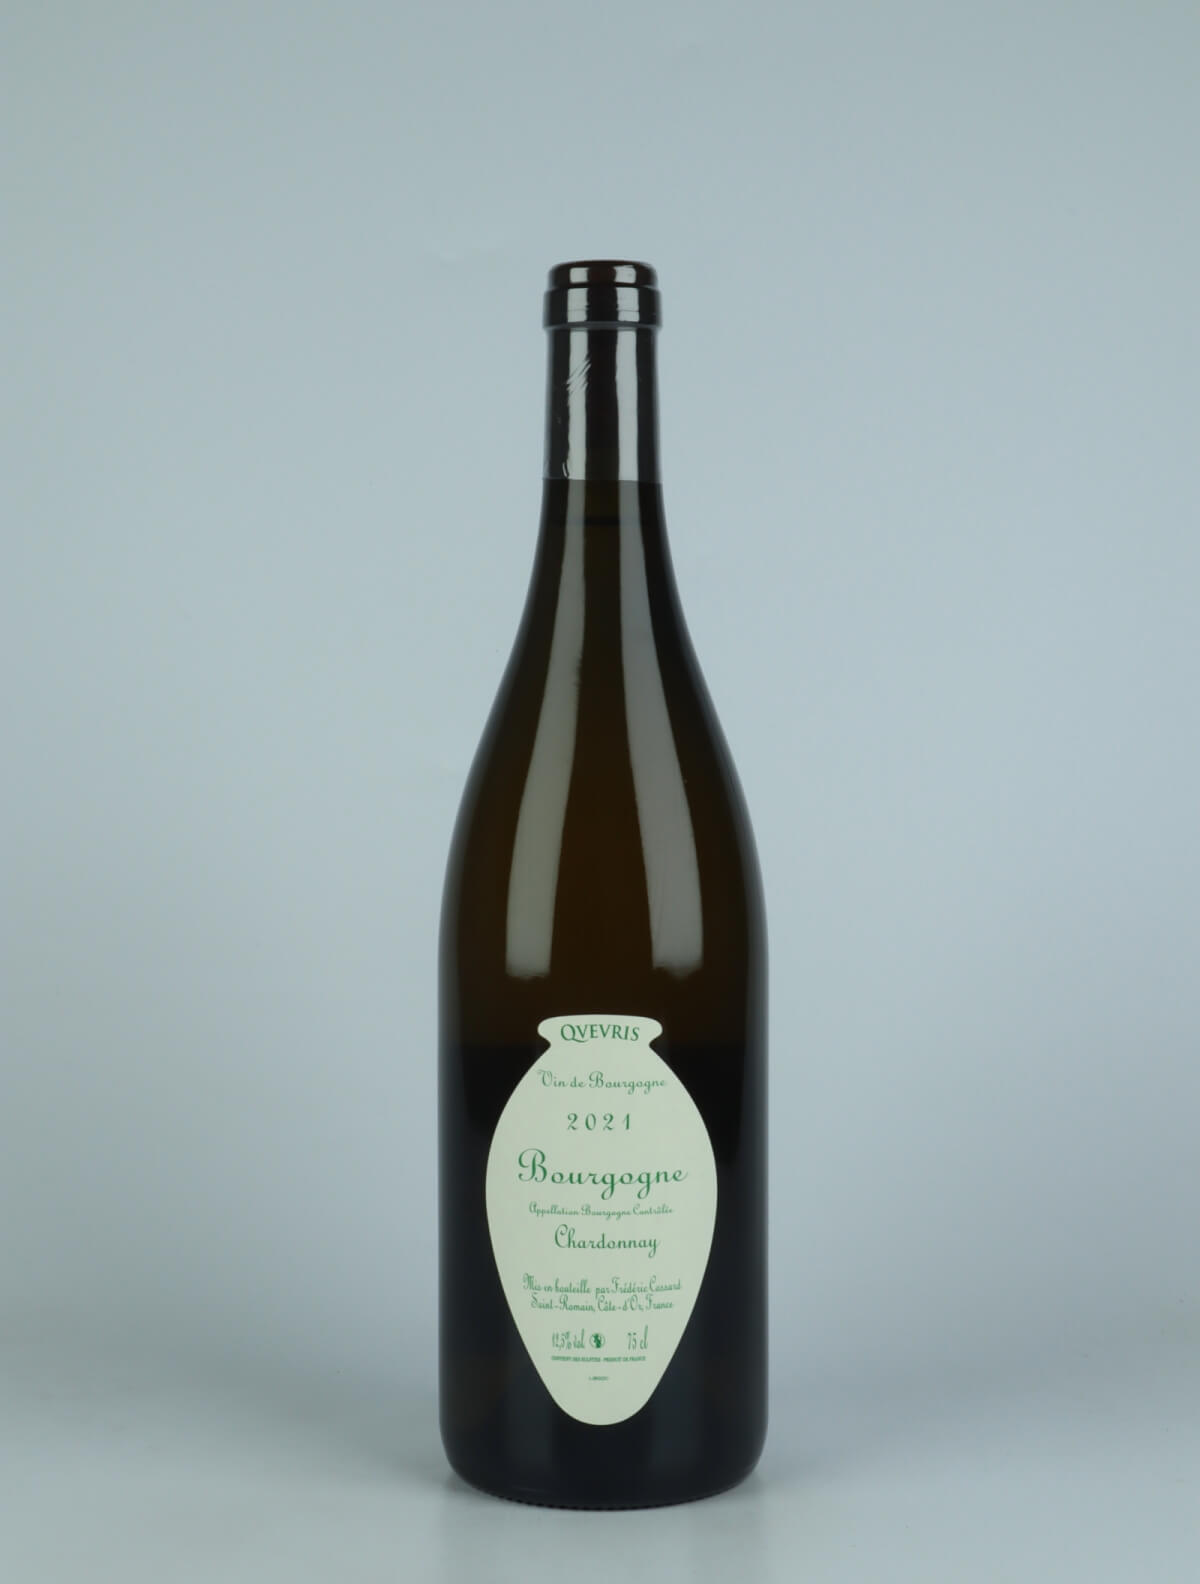 En flaske 2021 Bourgogne Blanc - Bigotes Qvevris Hvidvin fra Frédéric Cossard, Bourgogne i Frankrig